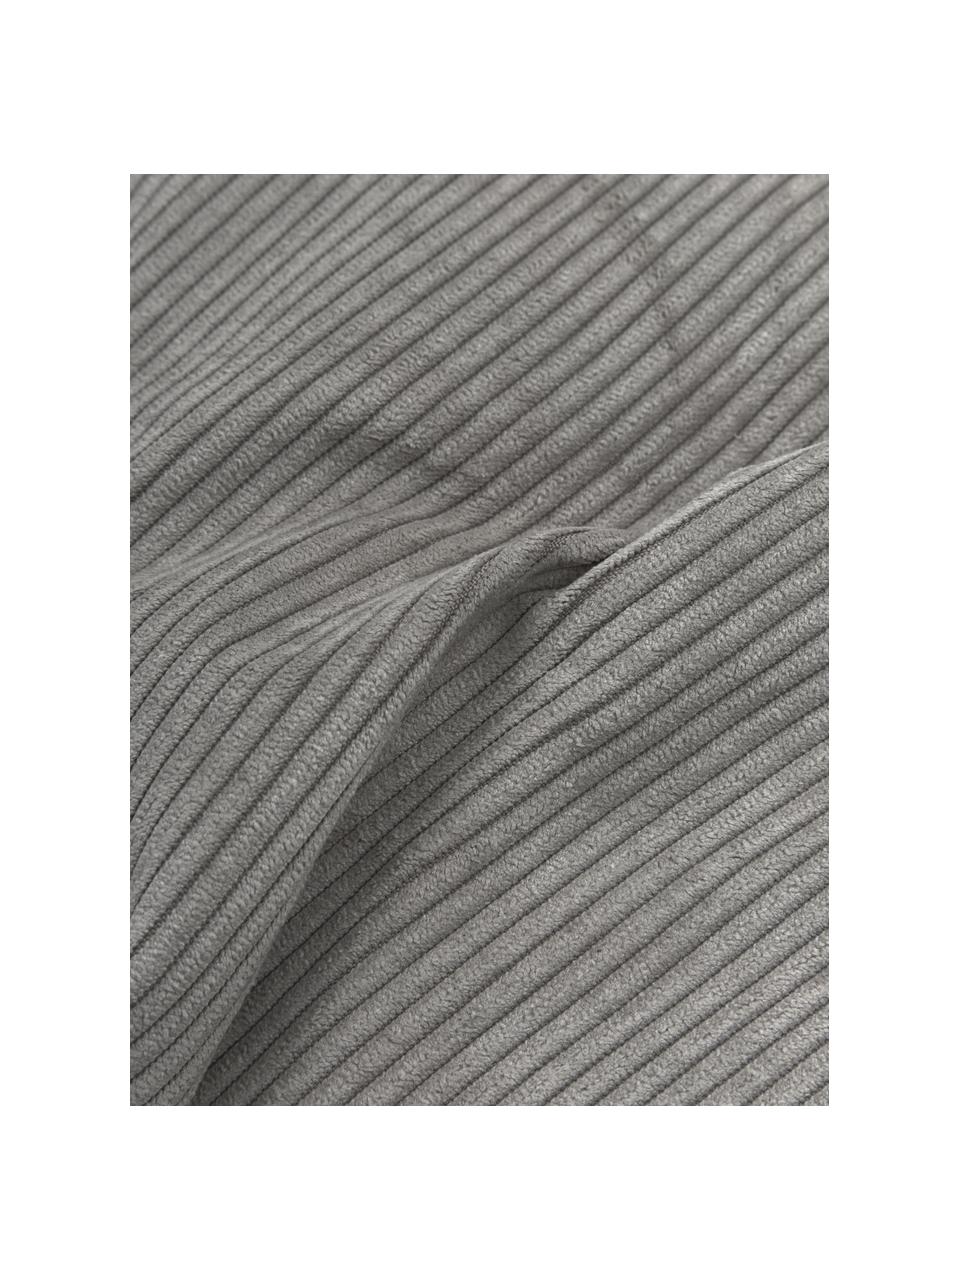 Bankkussen Lennon in grijs van corduroy, Grijs, B 60 x L 60 cm